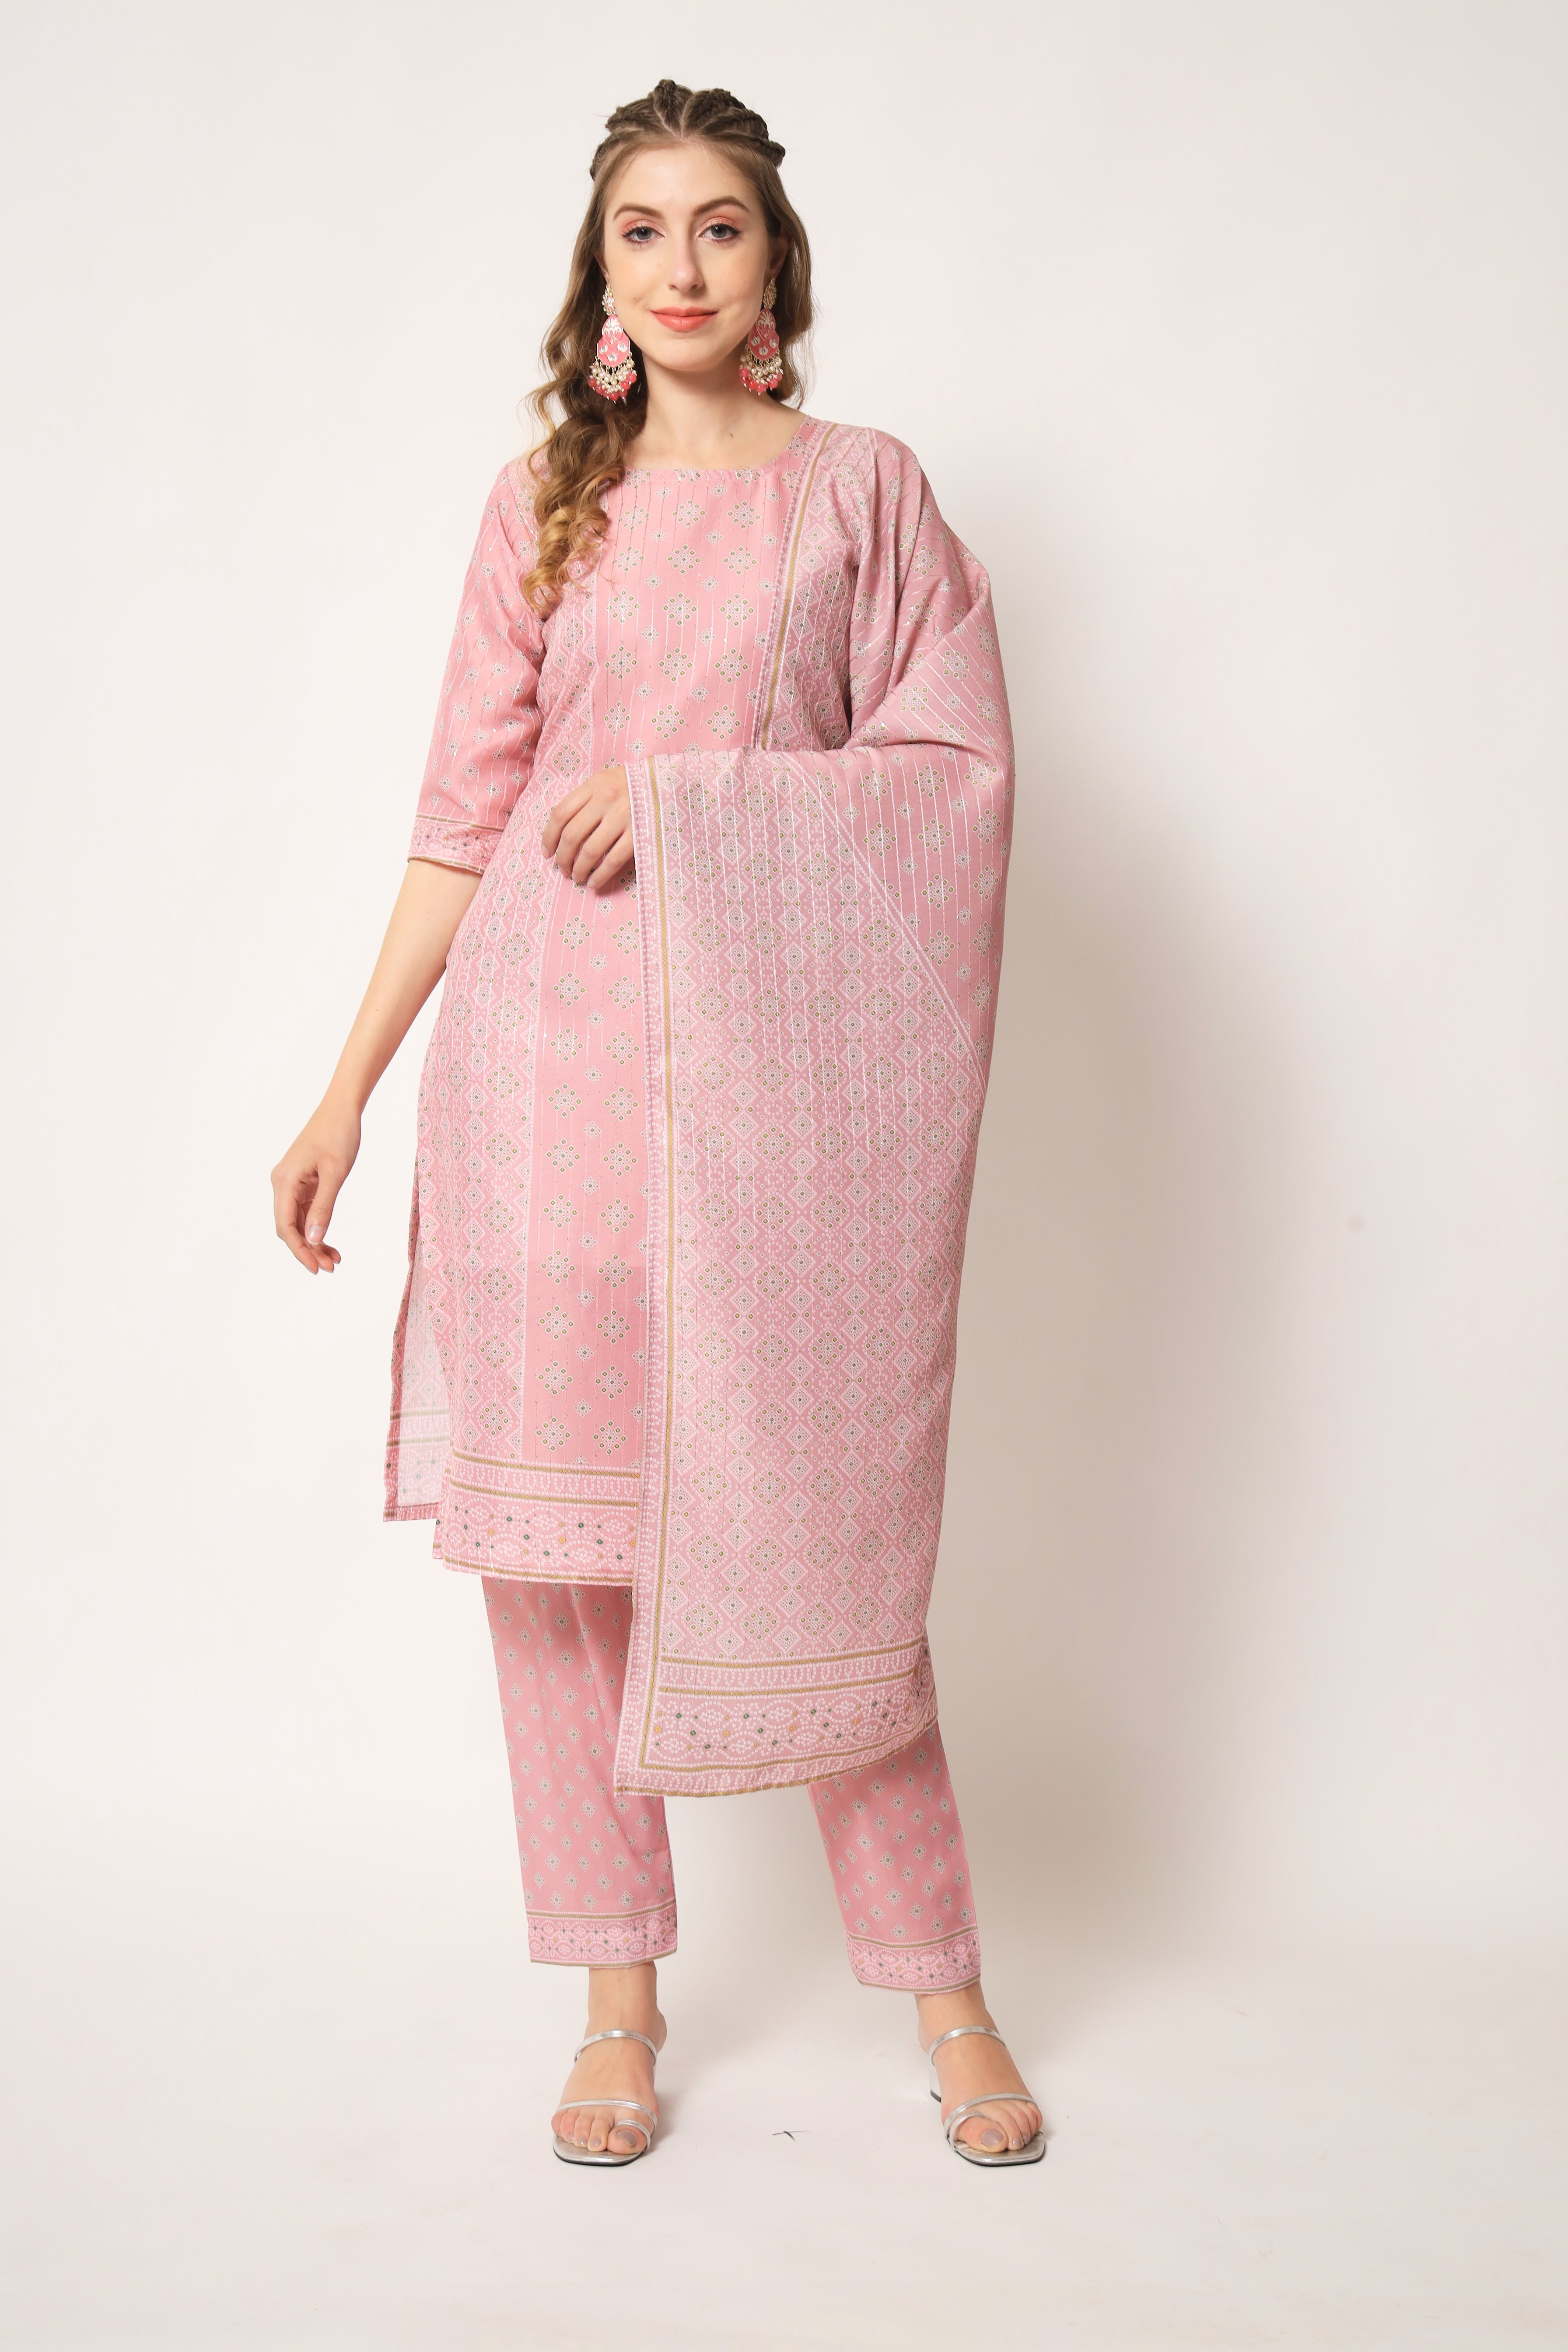 Embroidered Muslin Light Pink Trendy Salwar Kameez For Women